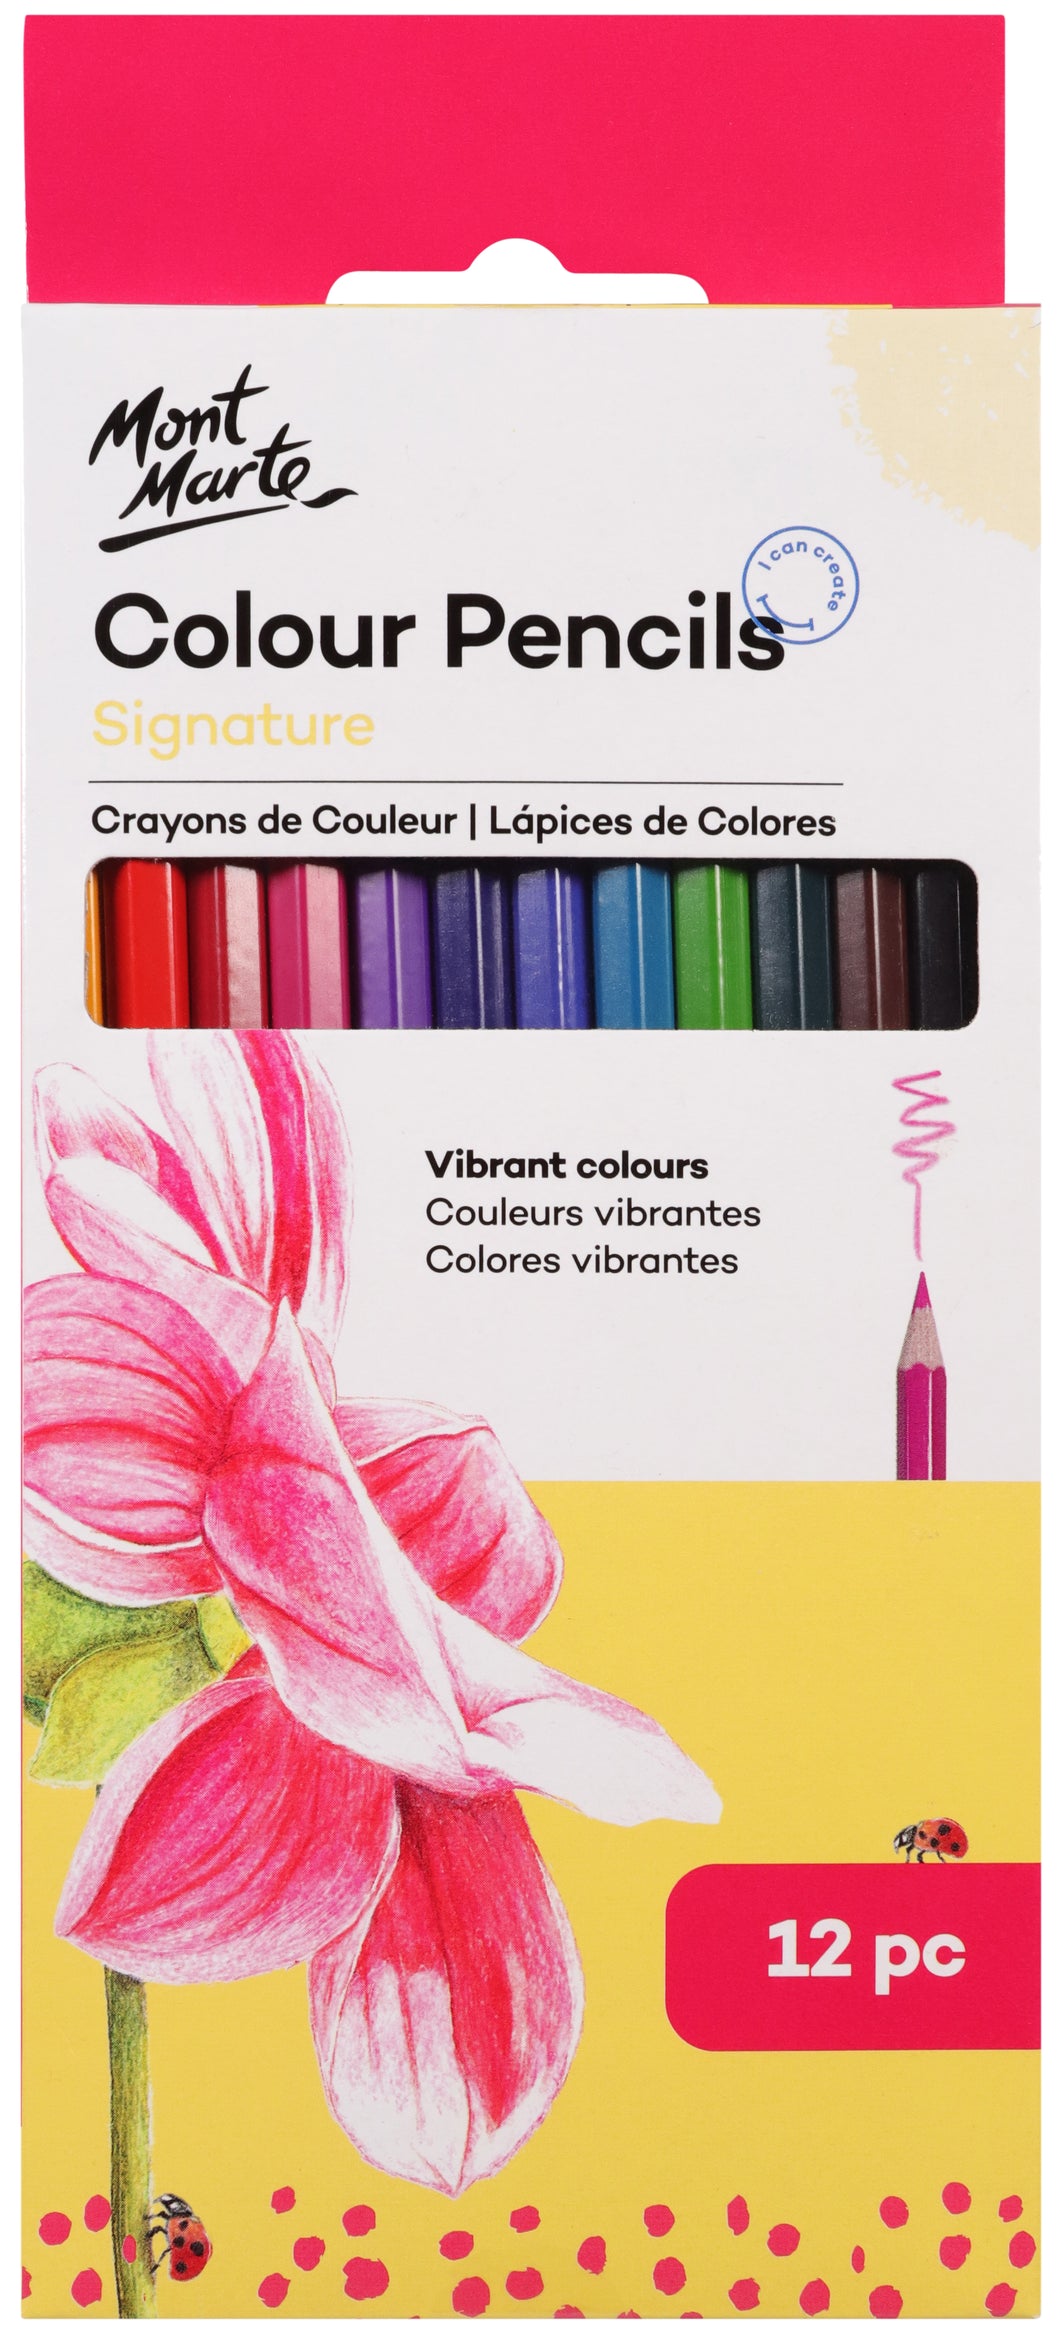 Monte Marte Colour Pencils 12pc